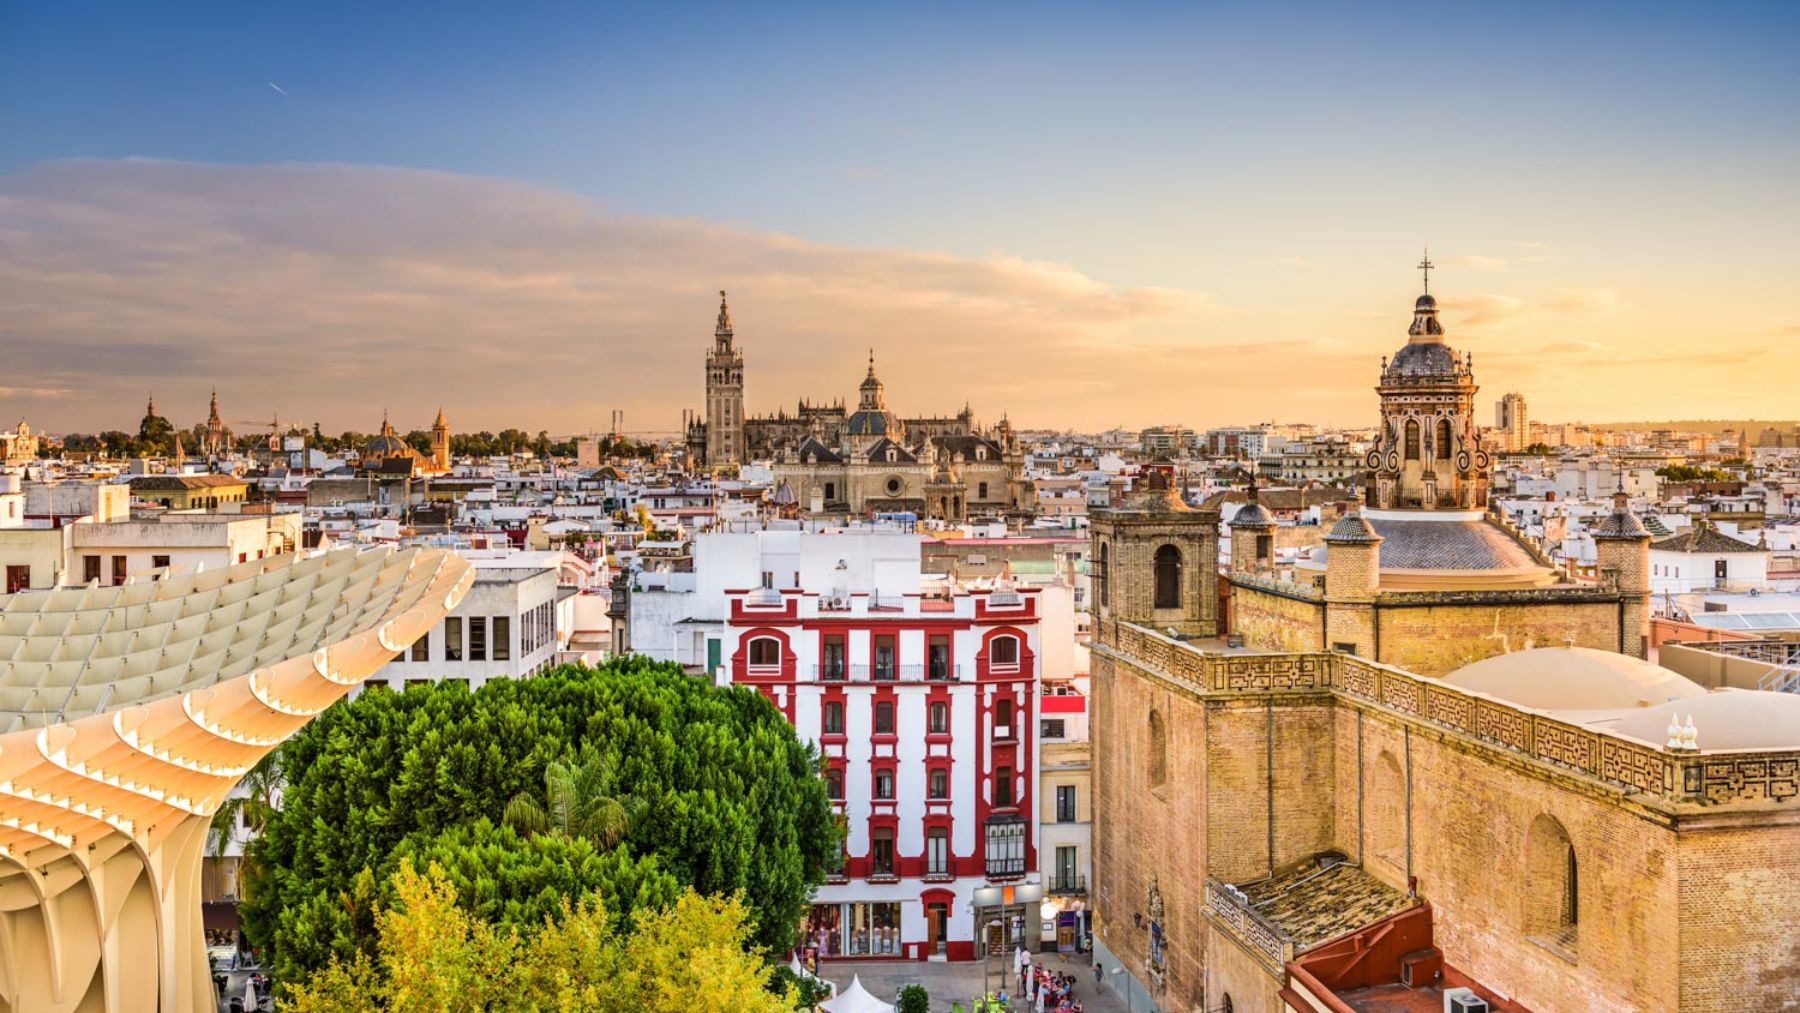 Sevilla se encuentra entre las más bonitas ciudades europeas para visitar a pie